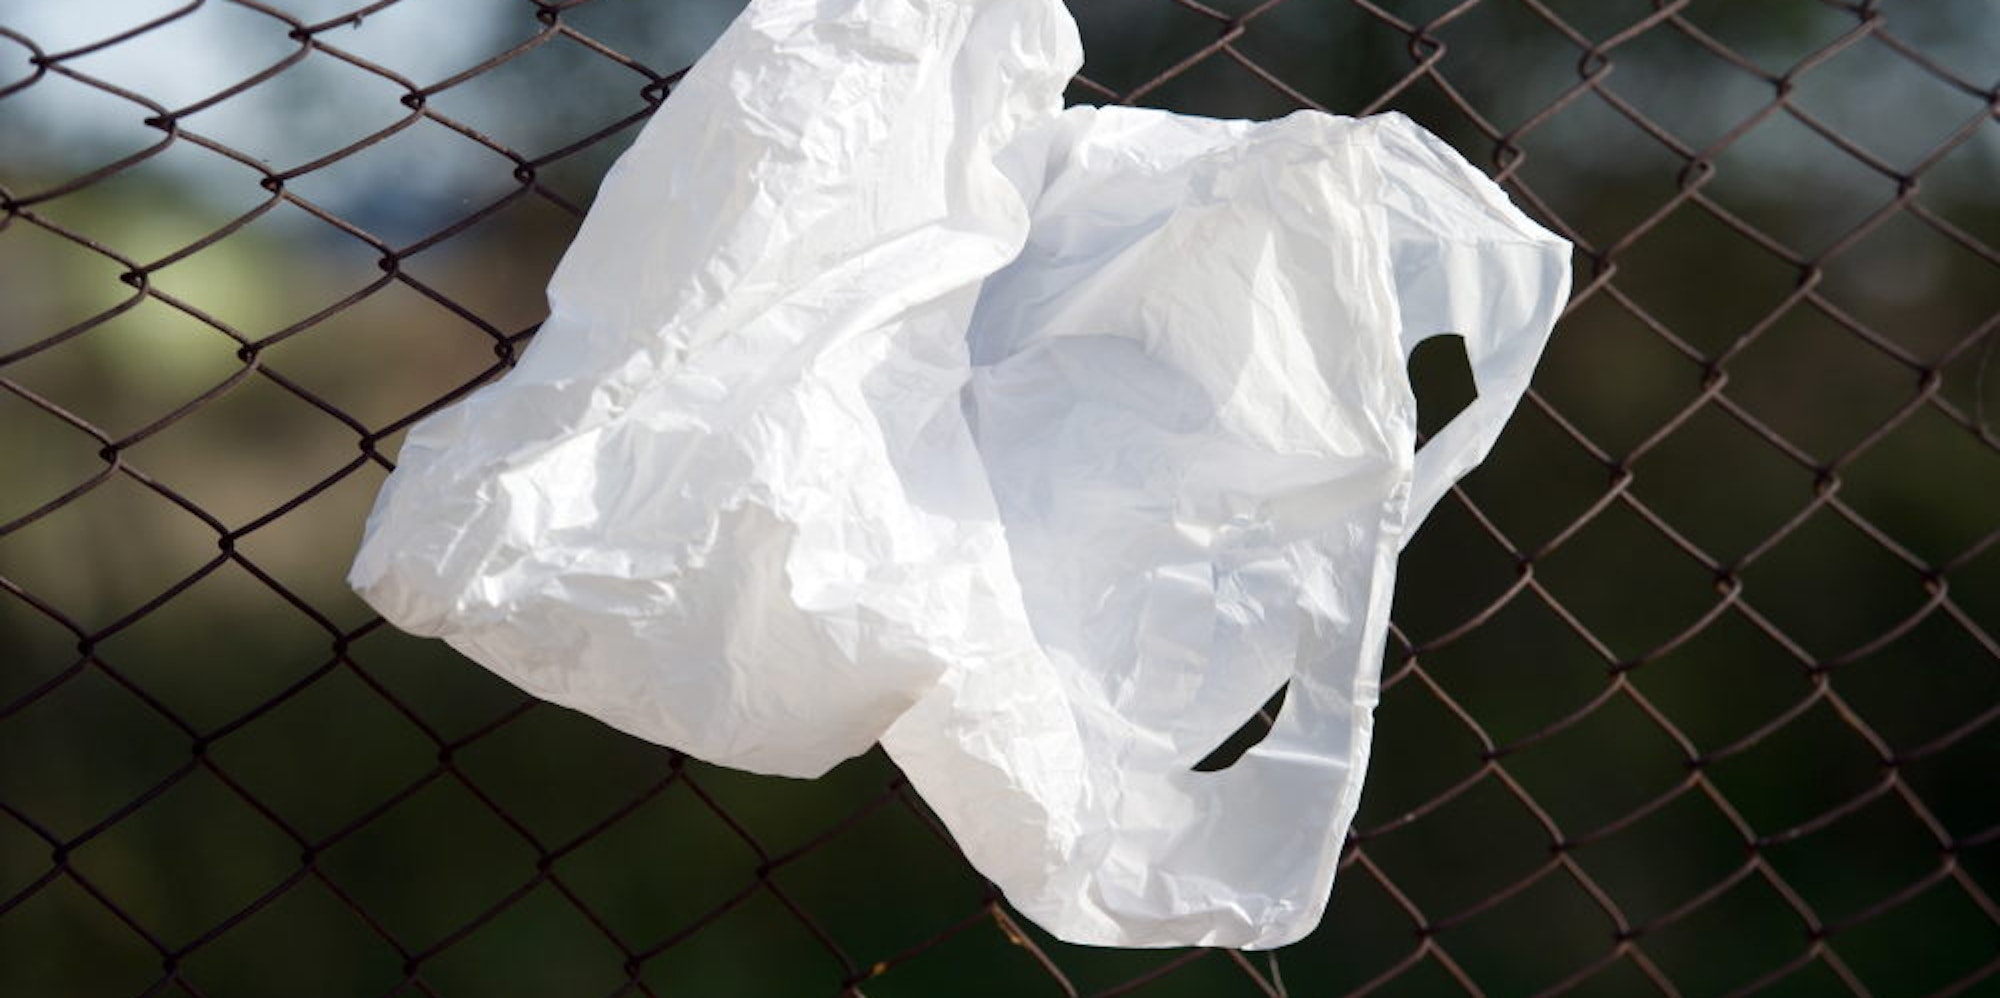 Völlig vermeiden sollten Verbraucher möglichst die Plastiktüten, in denen Lebensmittel verkauft werden. Stattdessen kann man Netze oder Stofftüten verwenden.